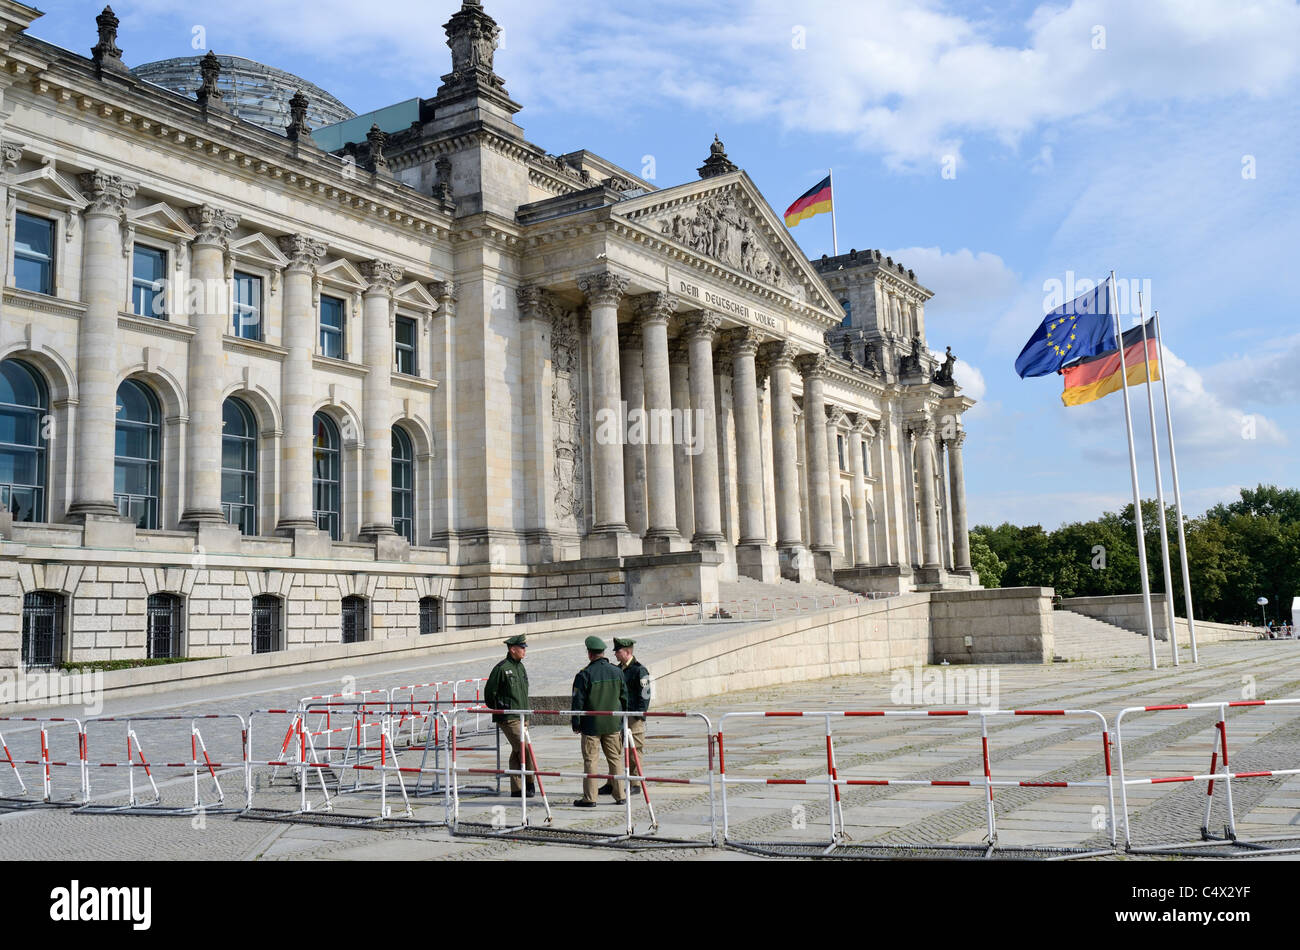 Obtenu à Berlin Reichstag (Parlement allemand) Après la terreur menace contre l'Allemagne. Trois agents de police à l'avant. Banque D'Images